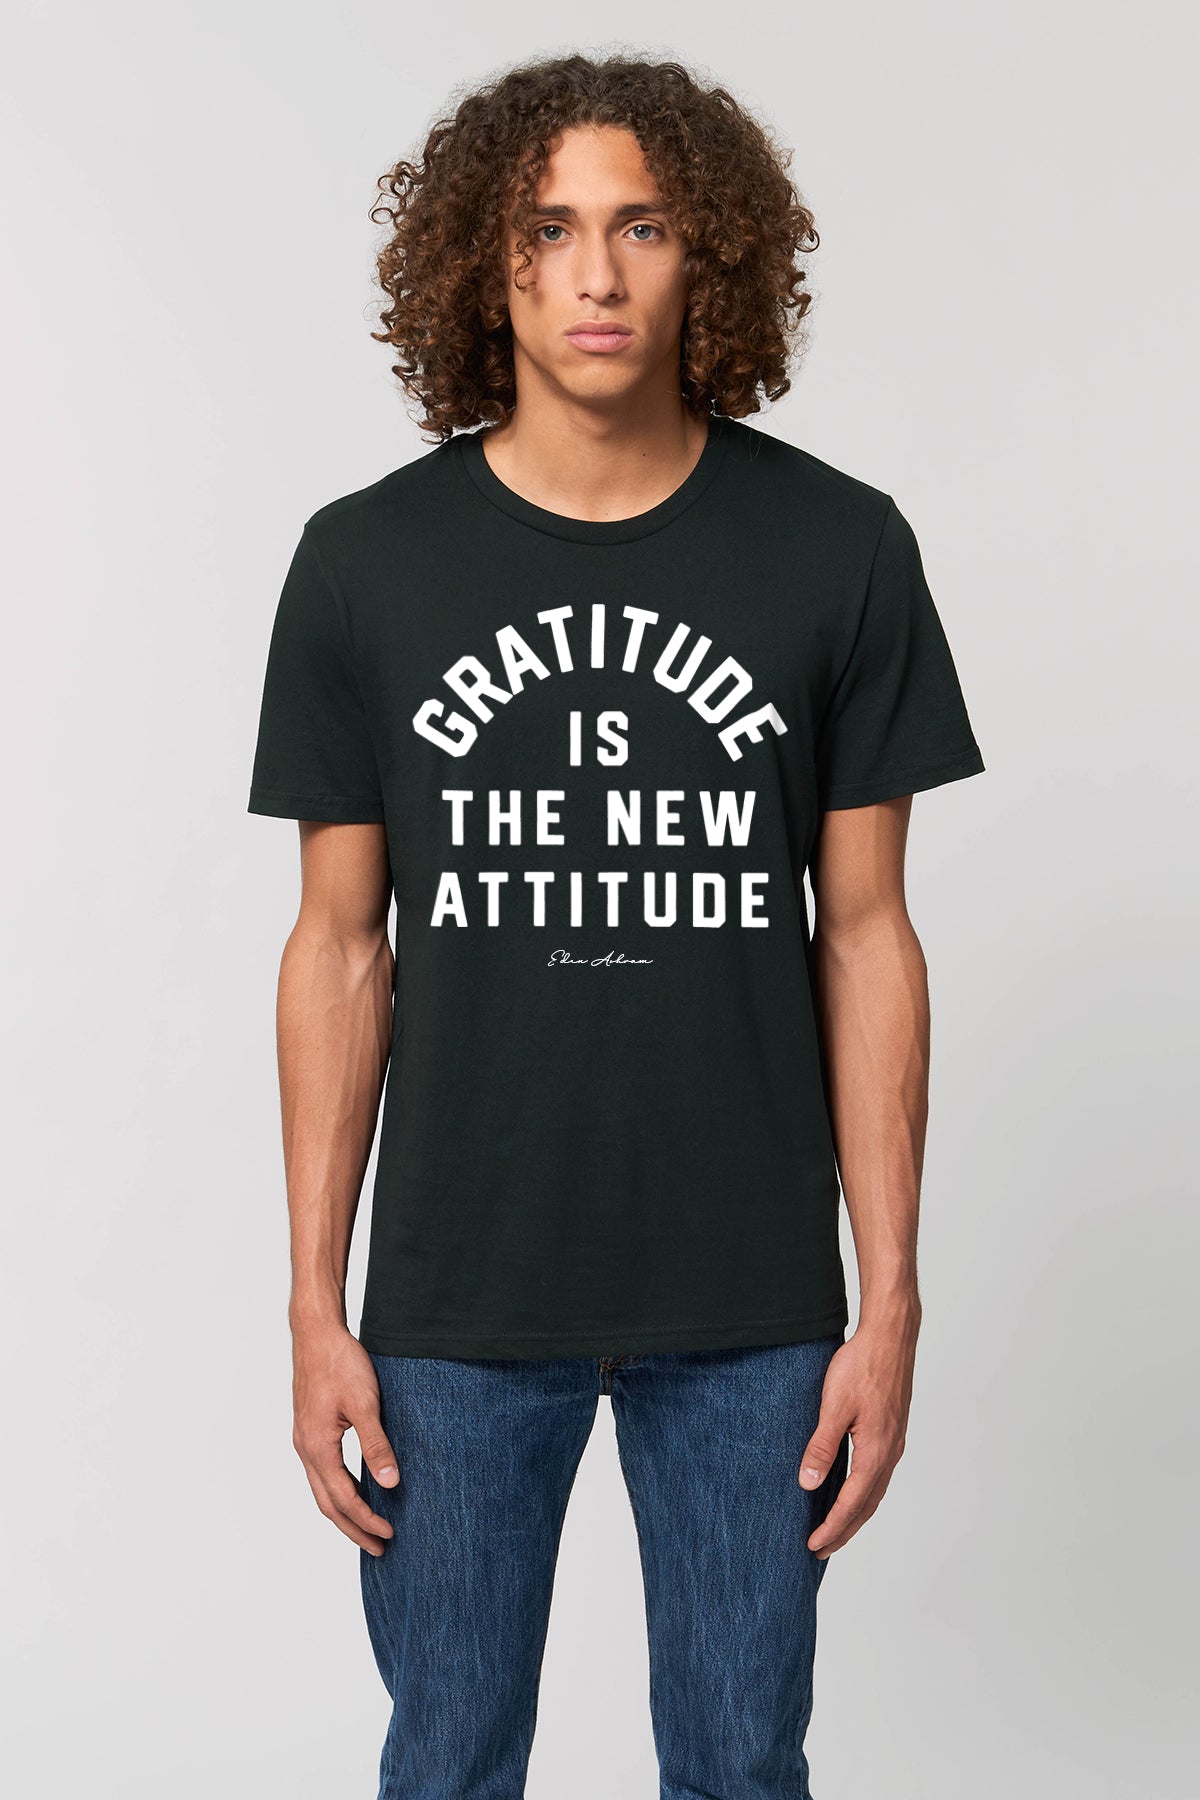 EDEN ASHRAM Gratitude is the new attitude - Premium Classic T-Shirt